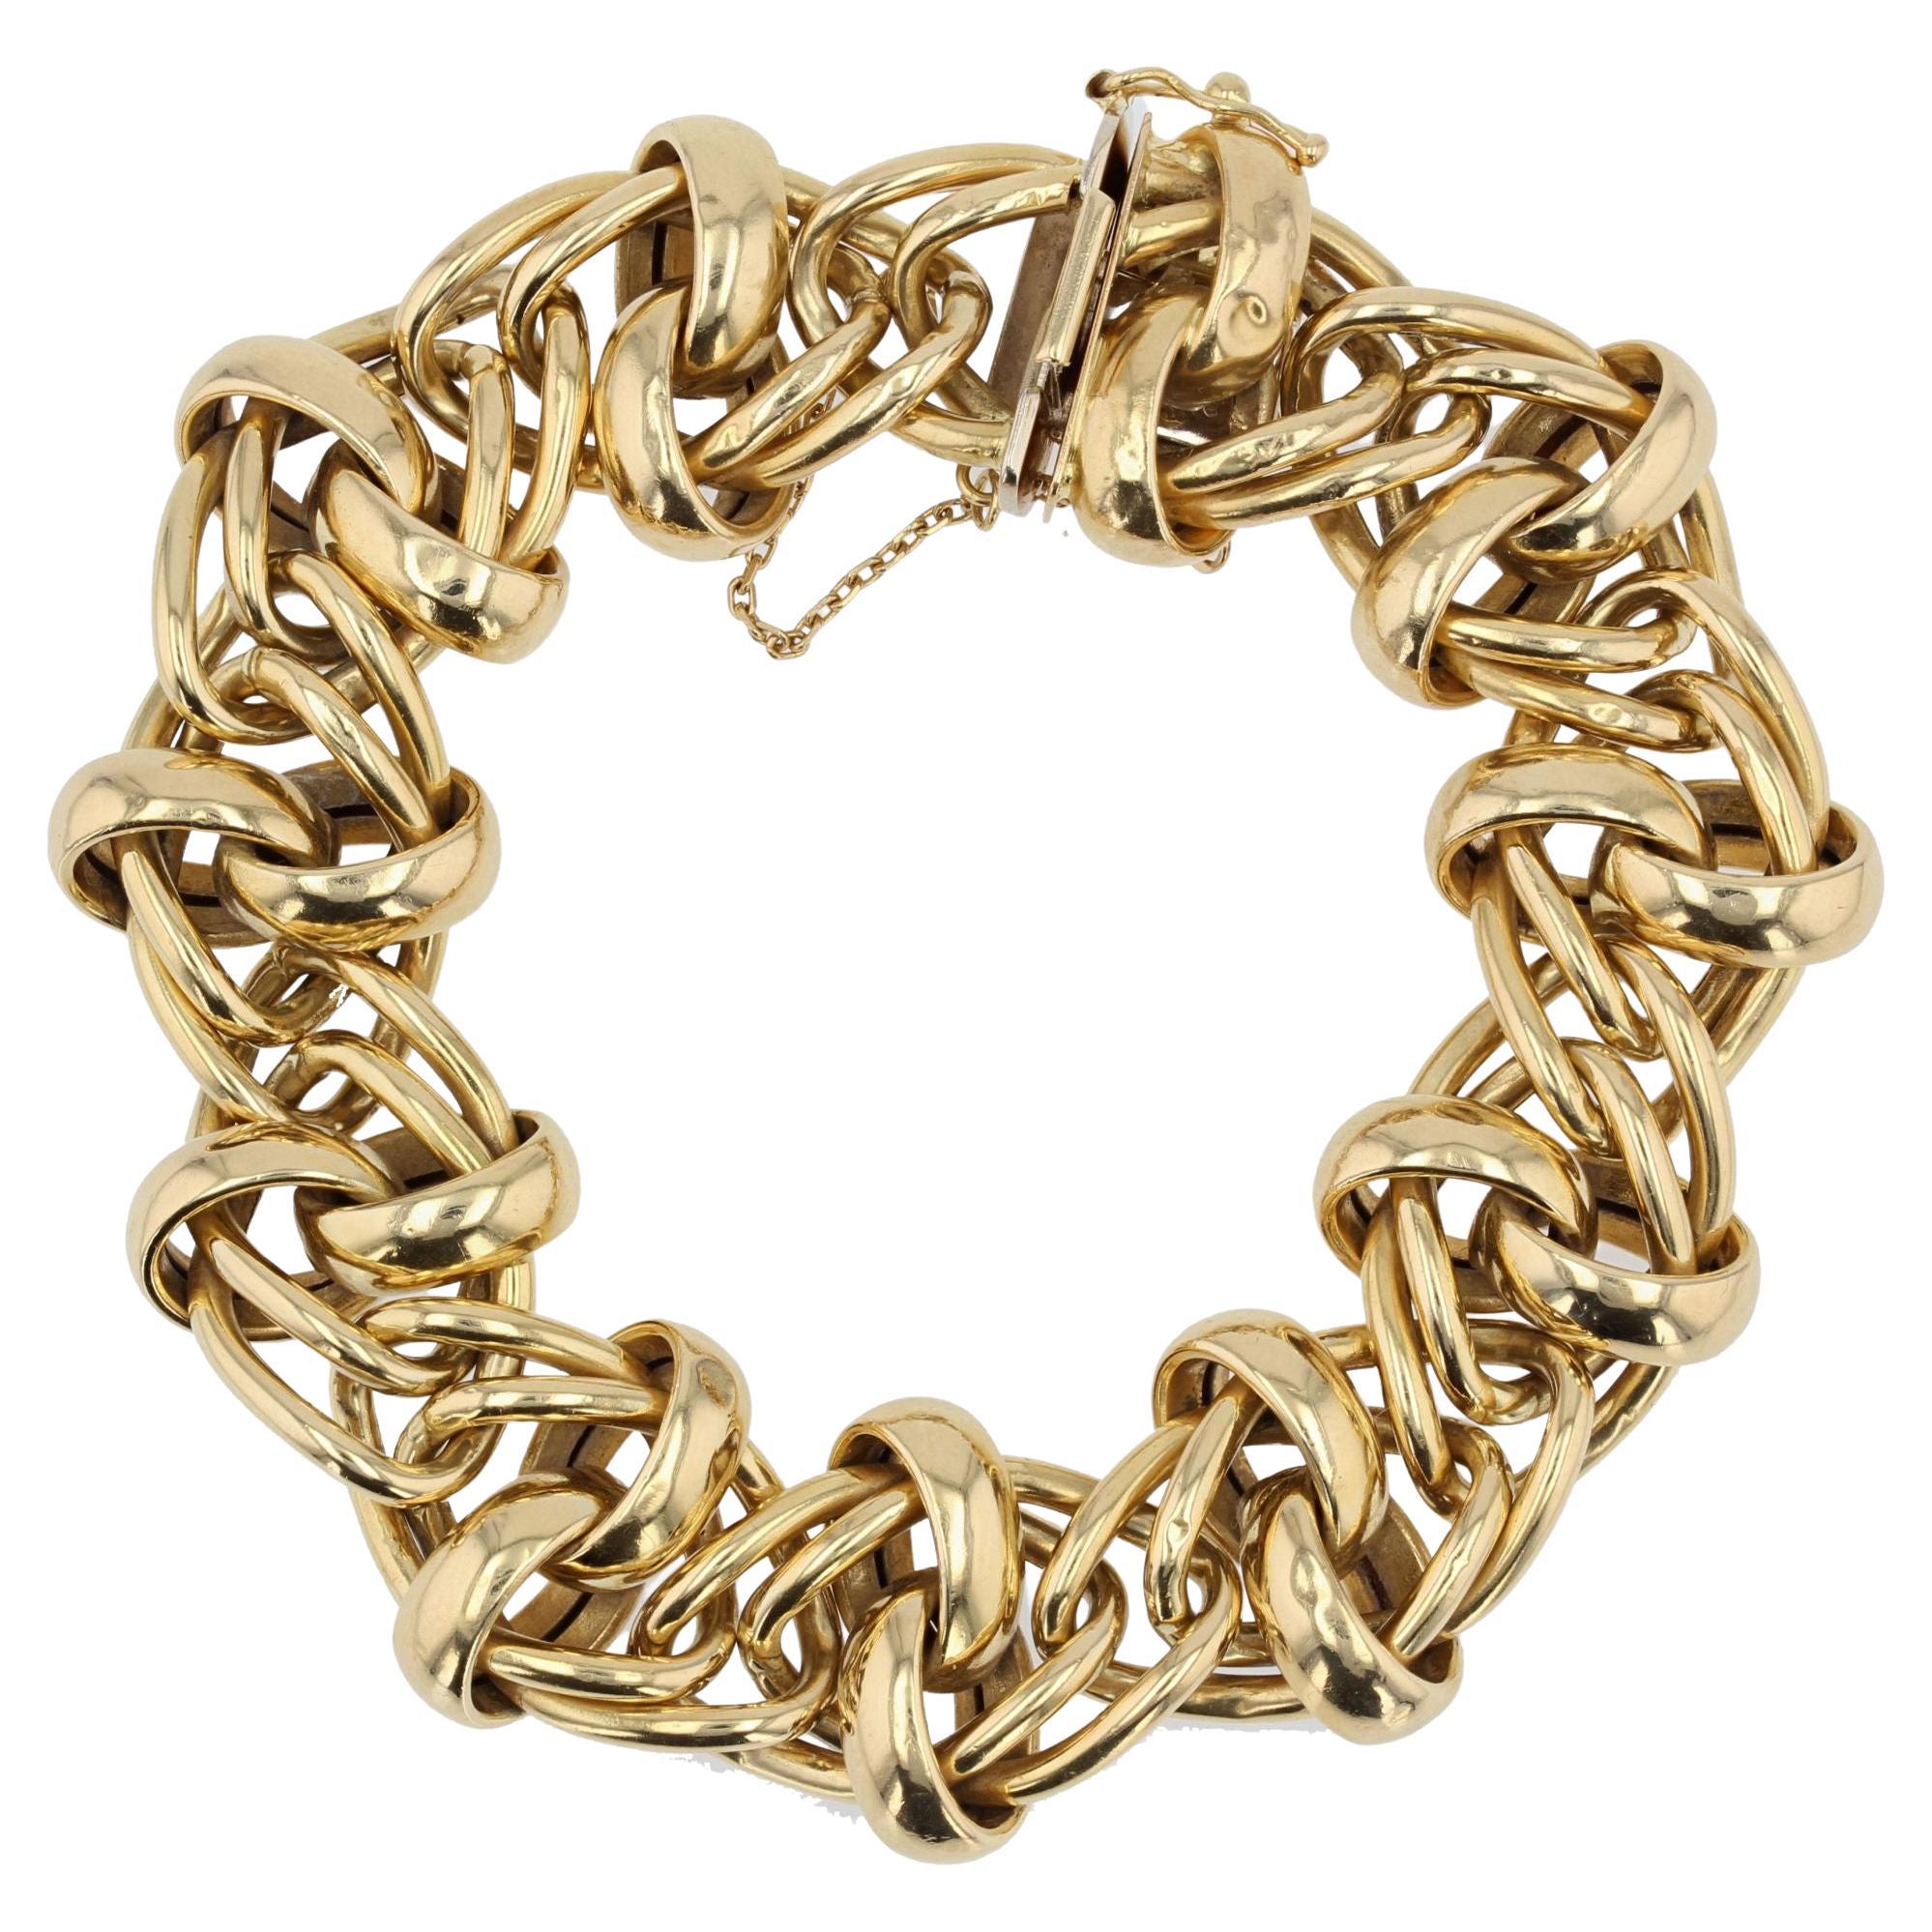 French Modern 18 Karat Yellow Gold Interlaced Patterns Bracelet